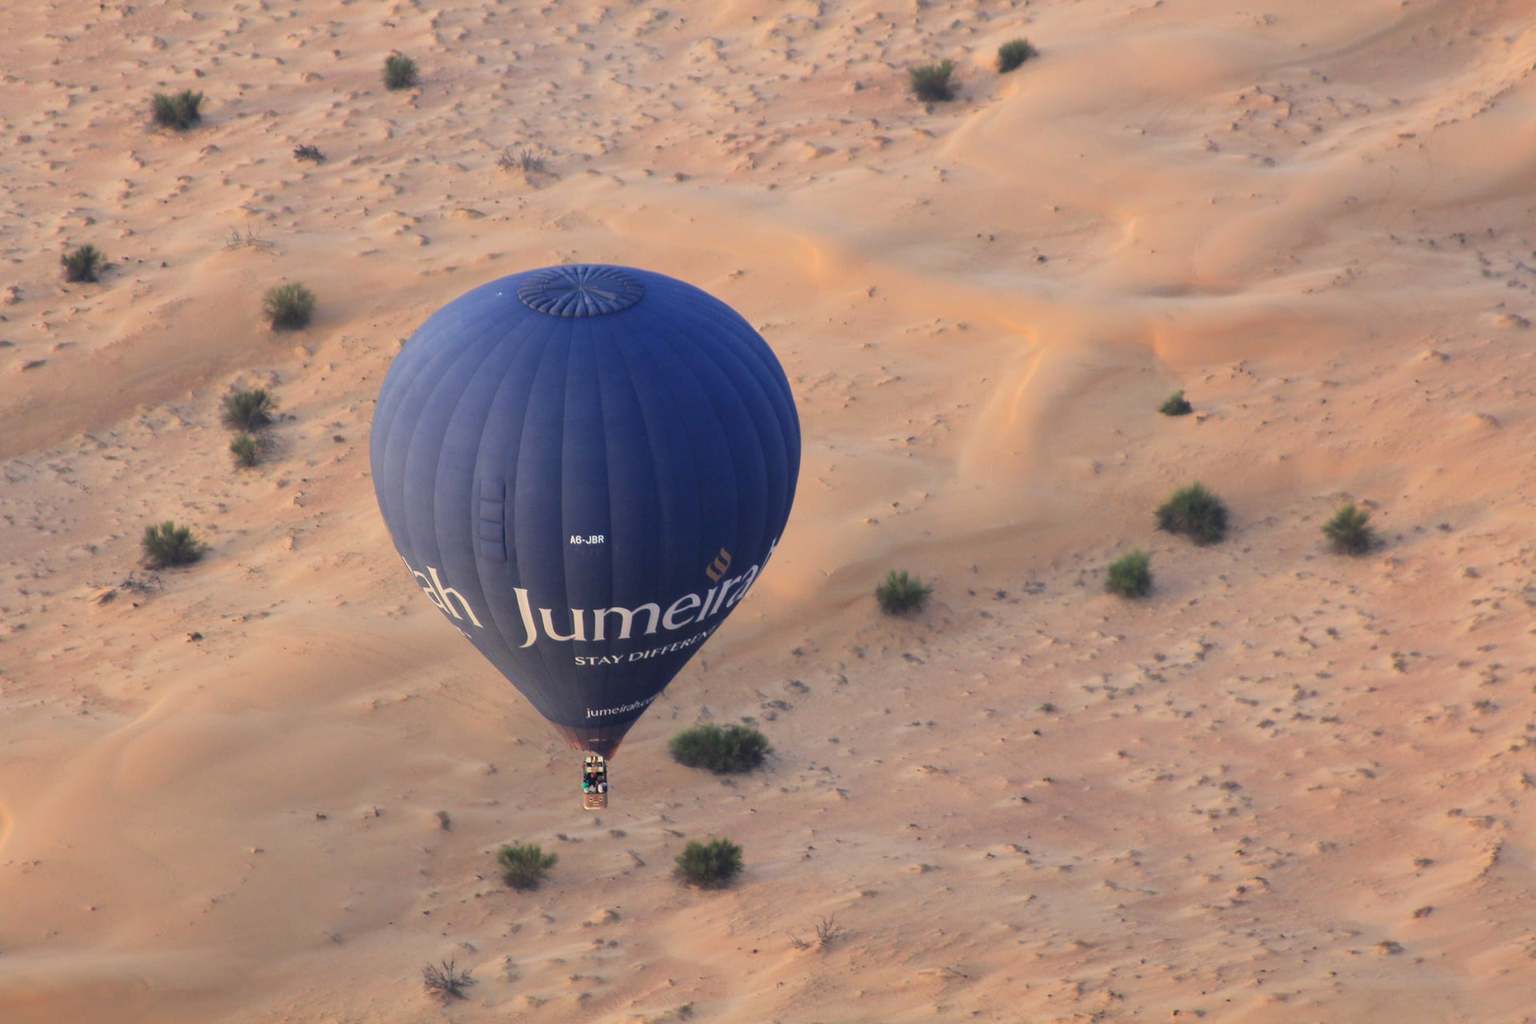 Sunrise hot air balloon over the desert